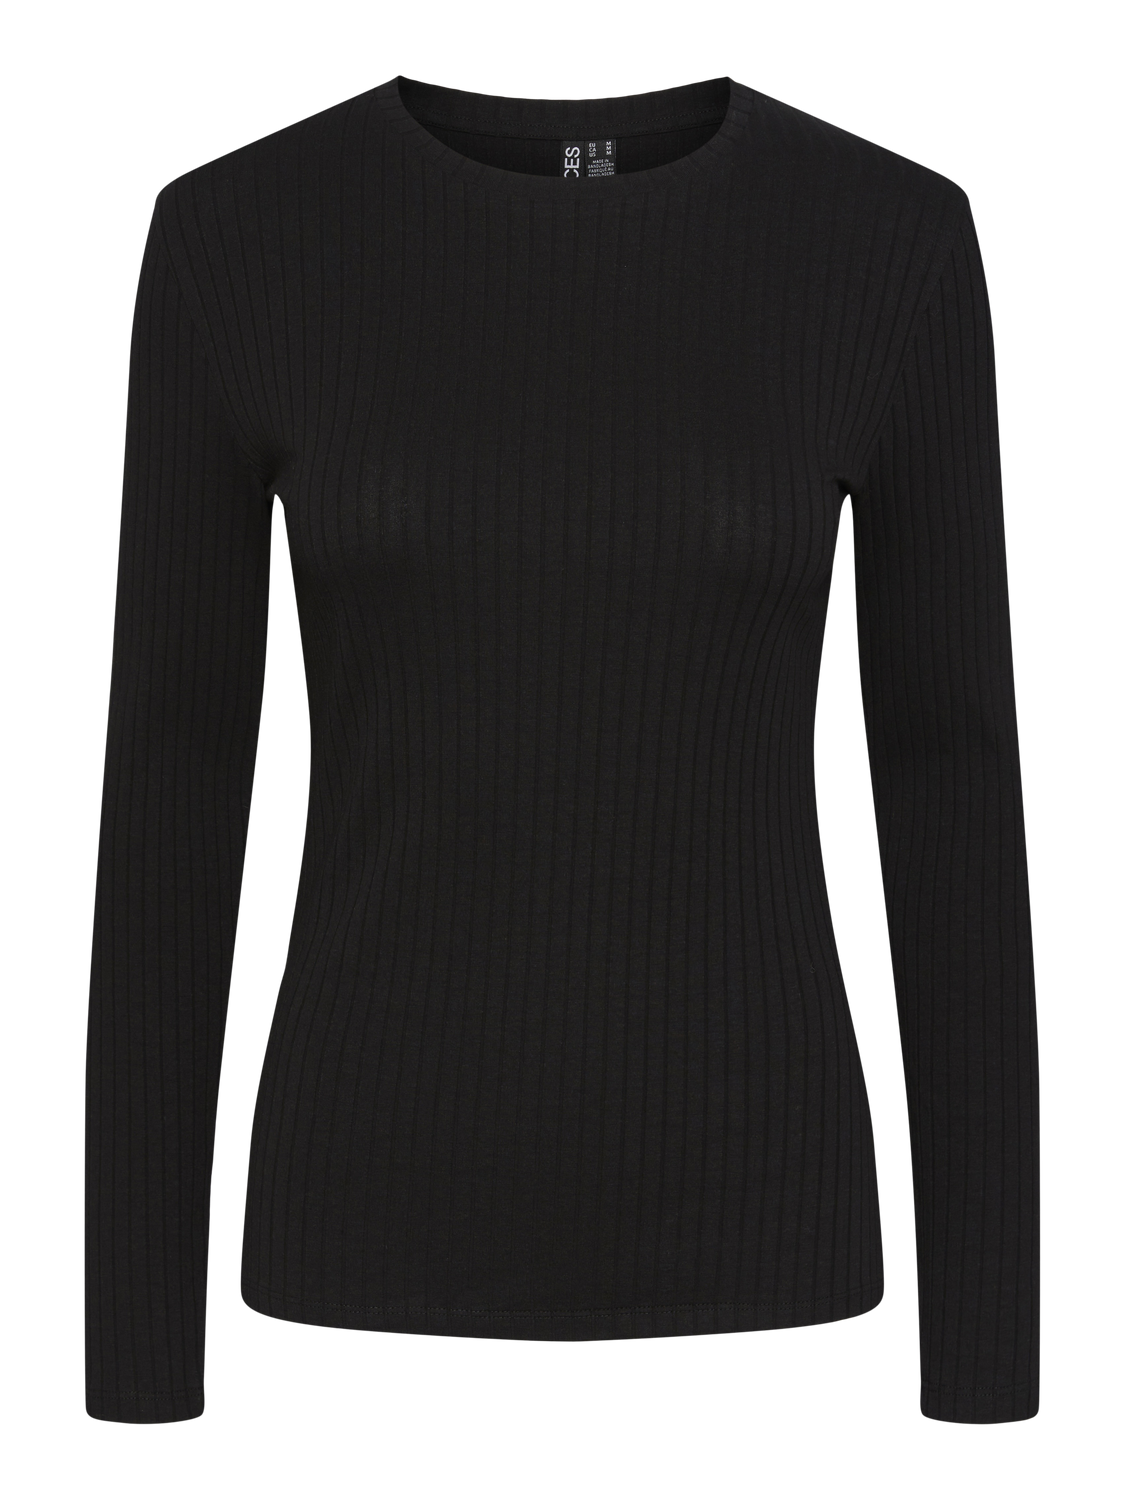 PCSAFI T-Shirts & Tops - Black